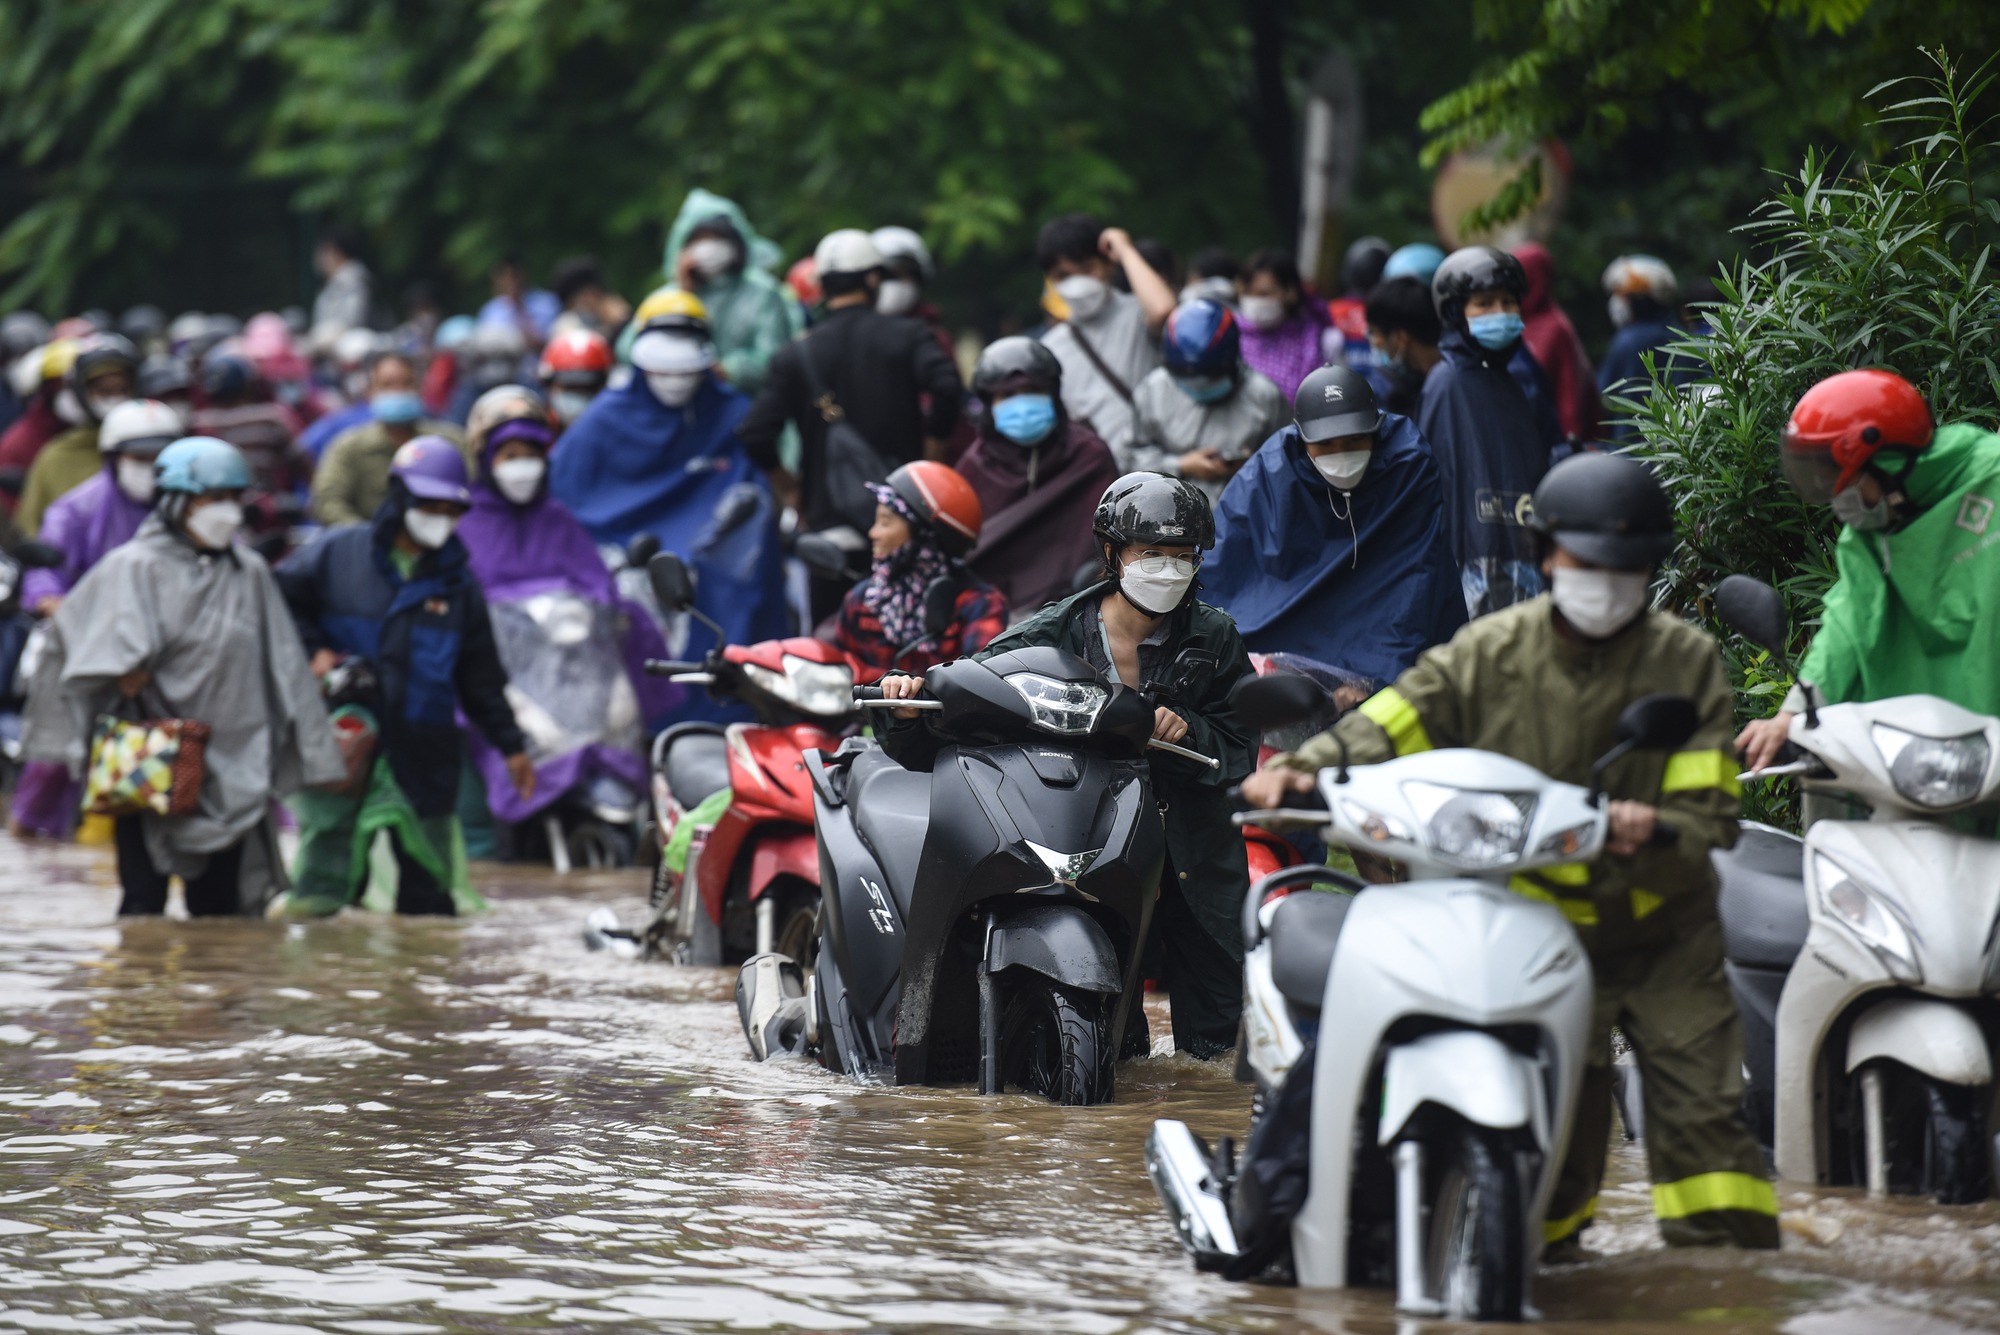 Đường gom đại lộ Thăng Long chìm trong biển nước sau trận mưa lớn - Ảnh 10.